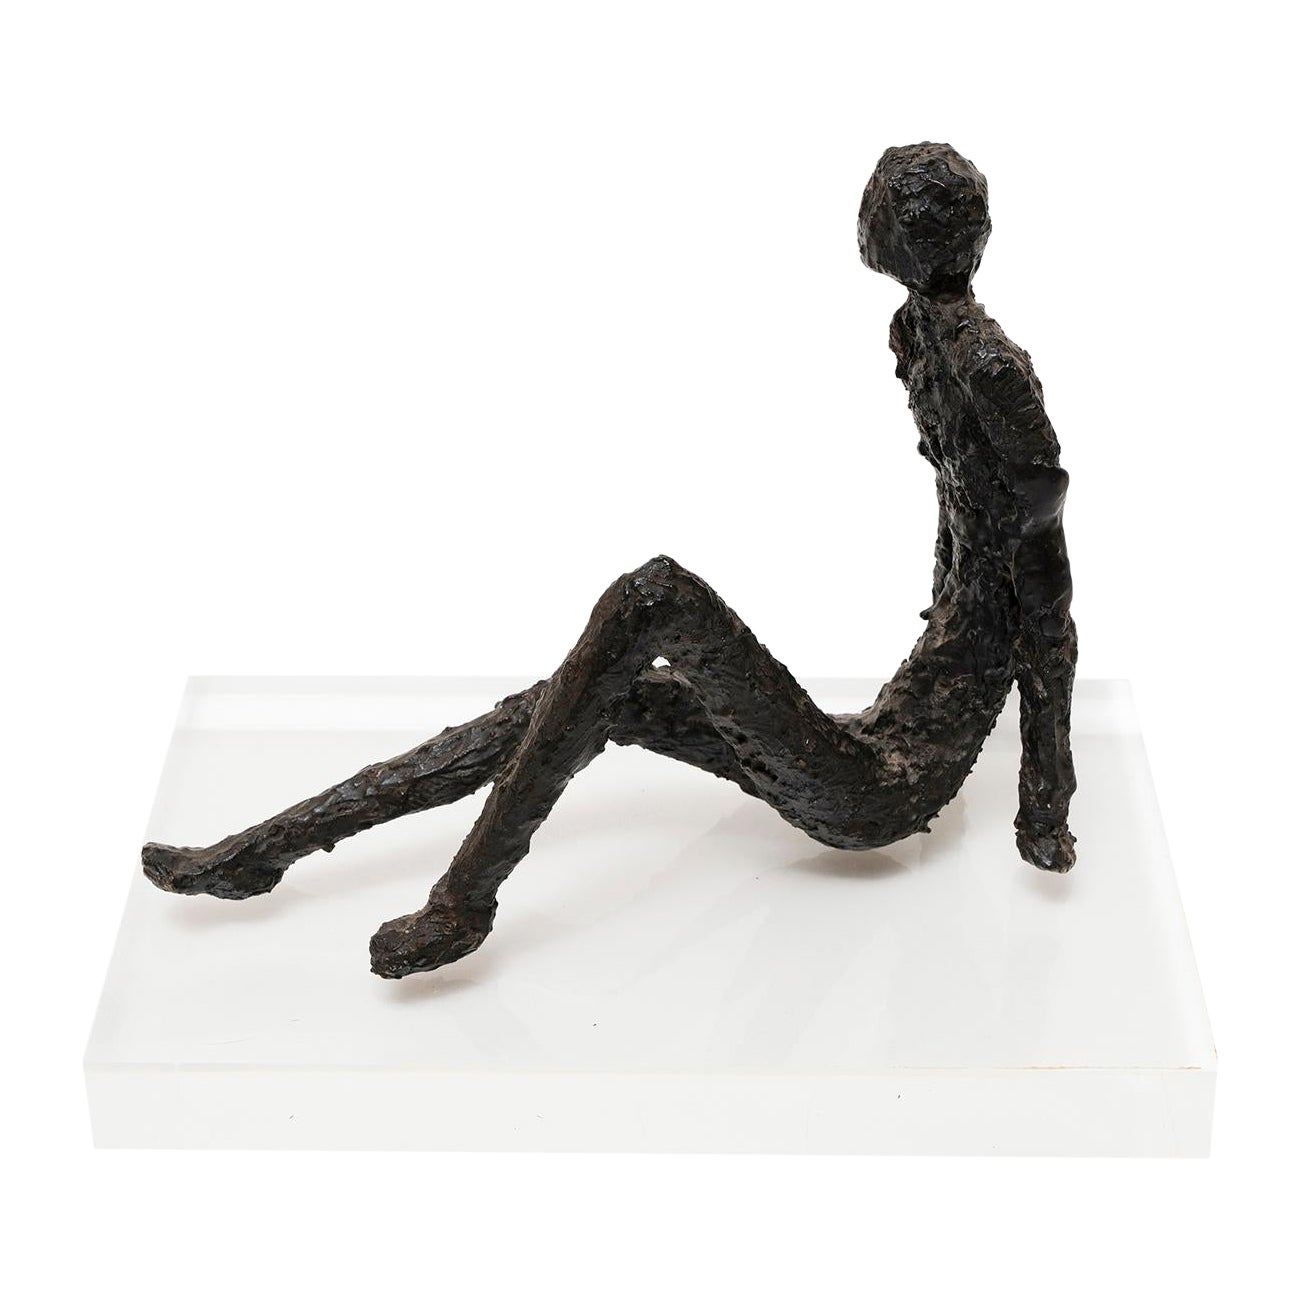 Sculpture Homme Figuratif Assis Contemplation Bronze 25cm 10"" manière Giacometti